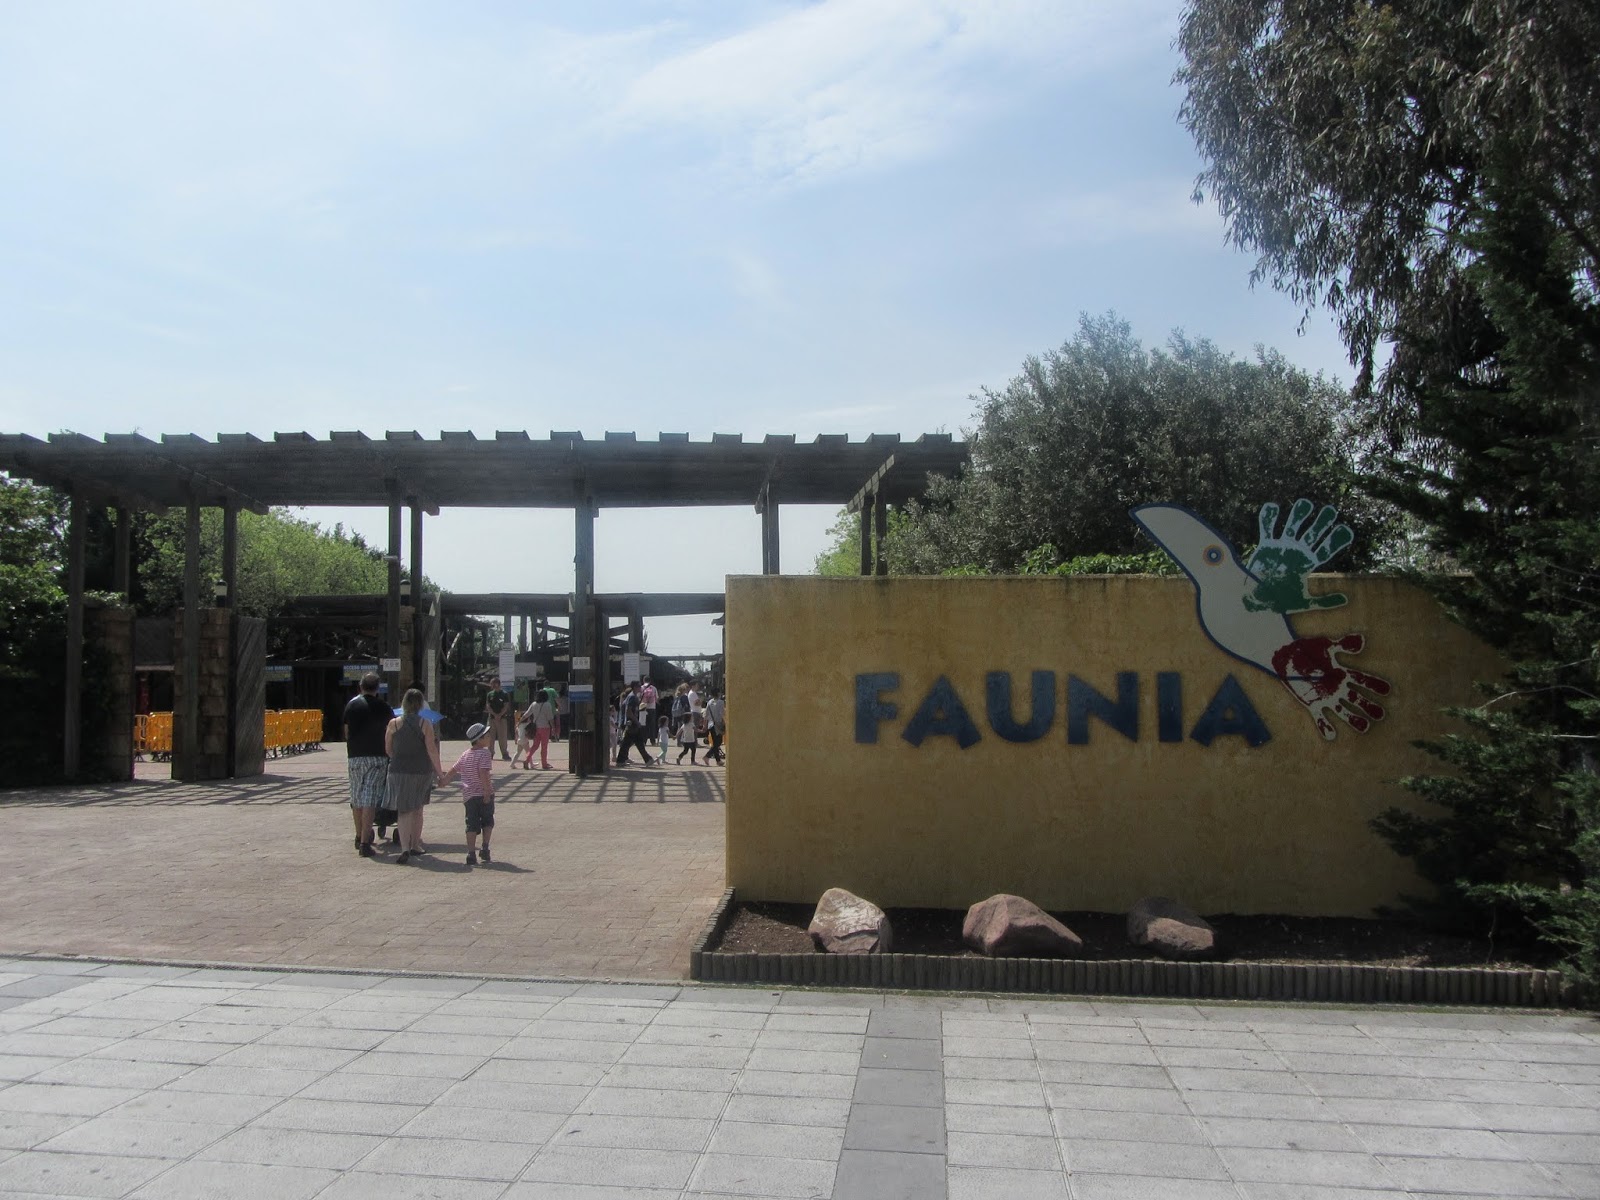 Faunia, El Parque Temático de la Naturaleza, dispone de cuatro ecosistemas y varias áreas temáticas adaptadas para cada especie.